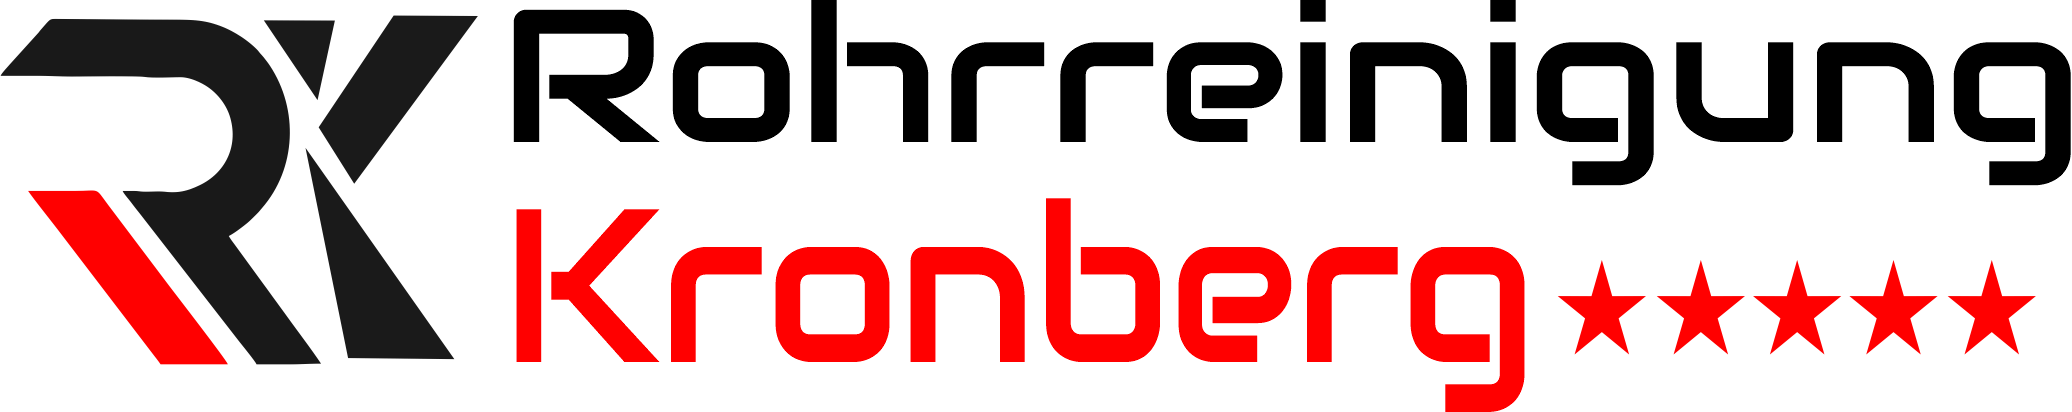 Rohrreinigung Kronberg im Taunus Logo